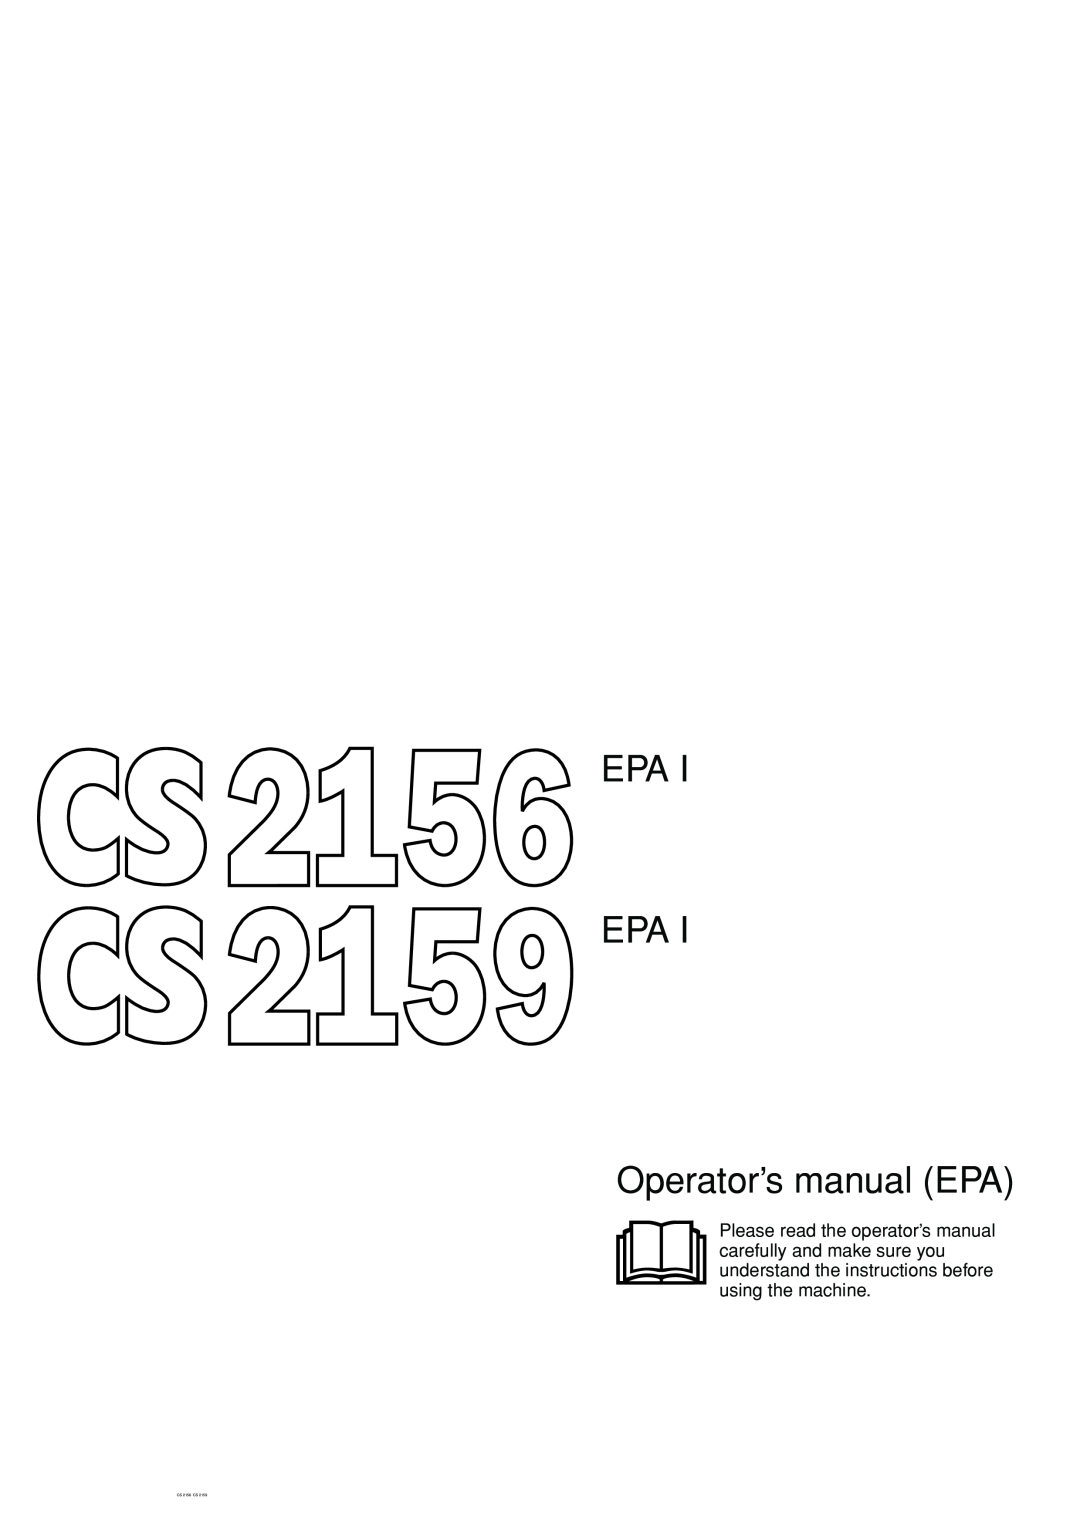 Jonsered manual EPA EPA Operator’s manual EPA, CS 2156 CS 